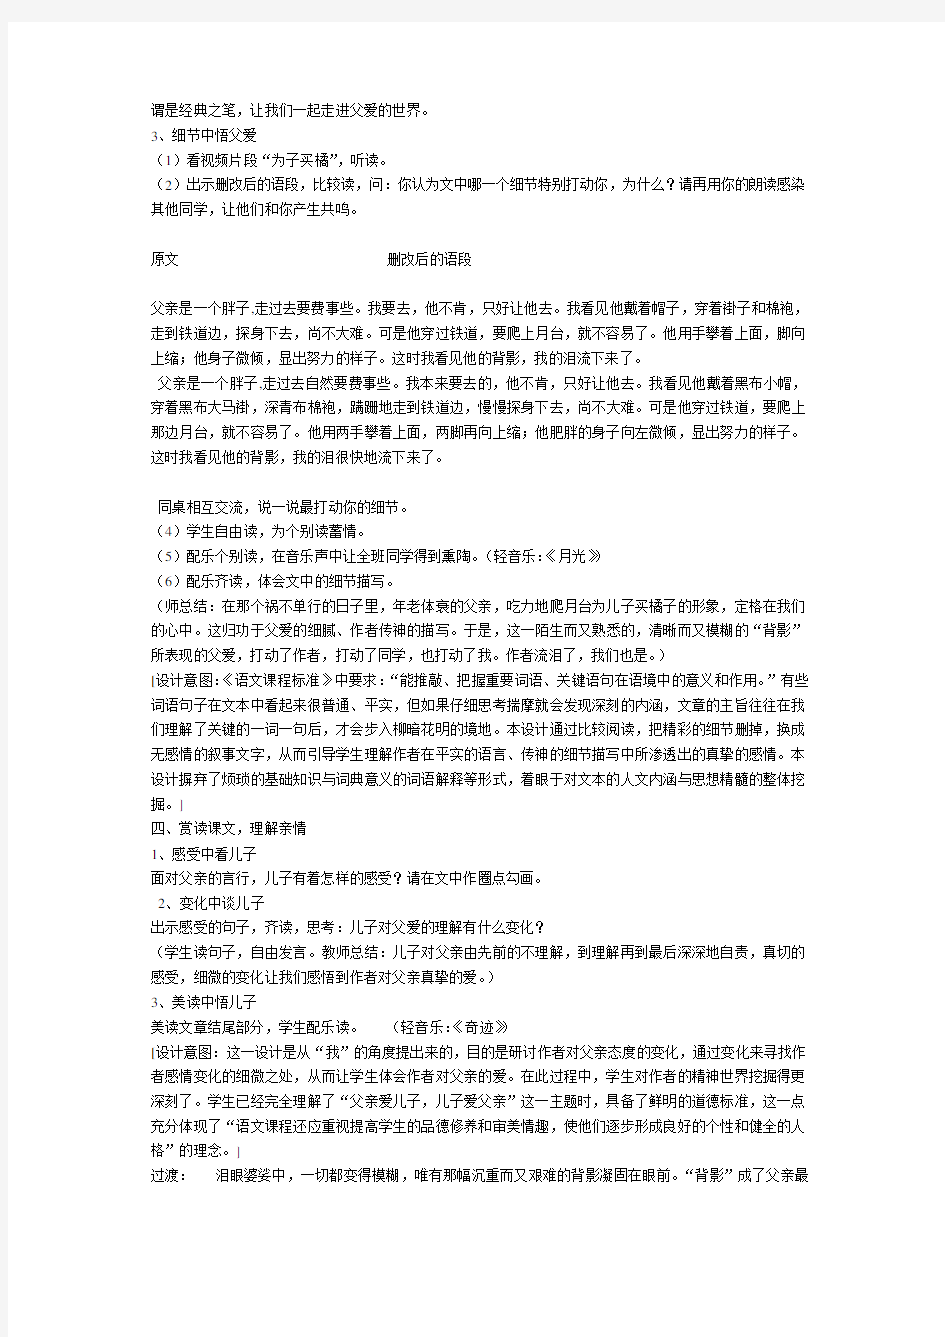 江苏省中学语文优秀教学设计获奖《背影》教案.